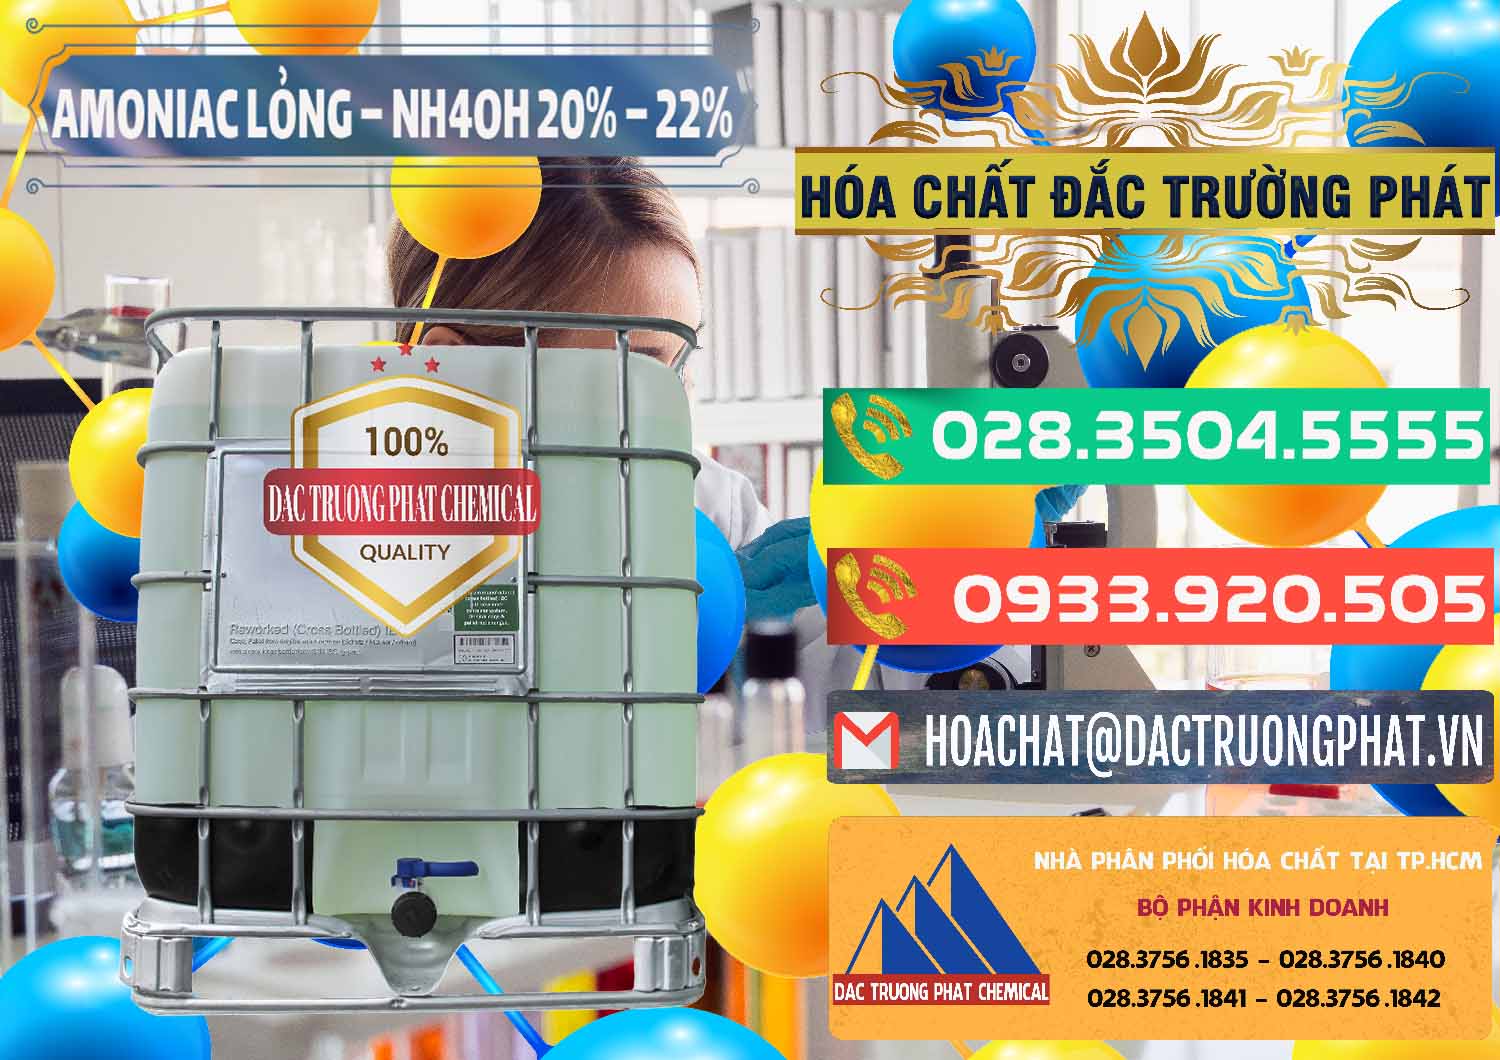 Cty kinh doanh & phân phối Amoniac Lỏng – NH4OH 20% – 22% Việt Nam - 0185 - Cty cung cấp - phân phối hóa chất tại TP.HCM - congtyhoachat.com.vn